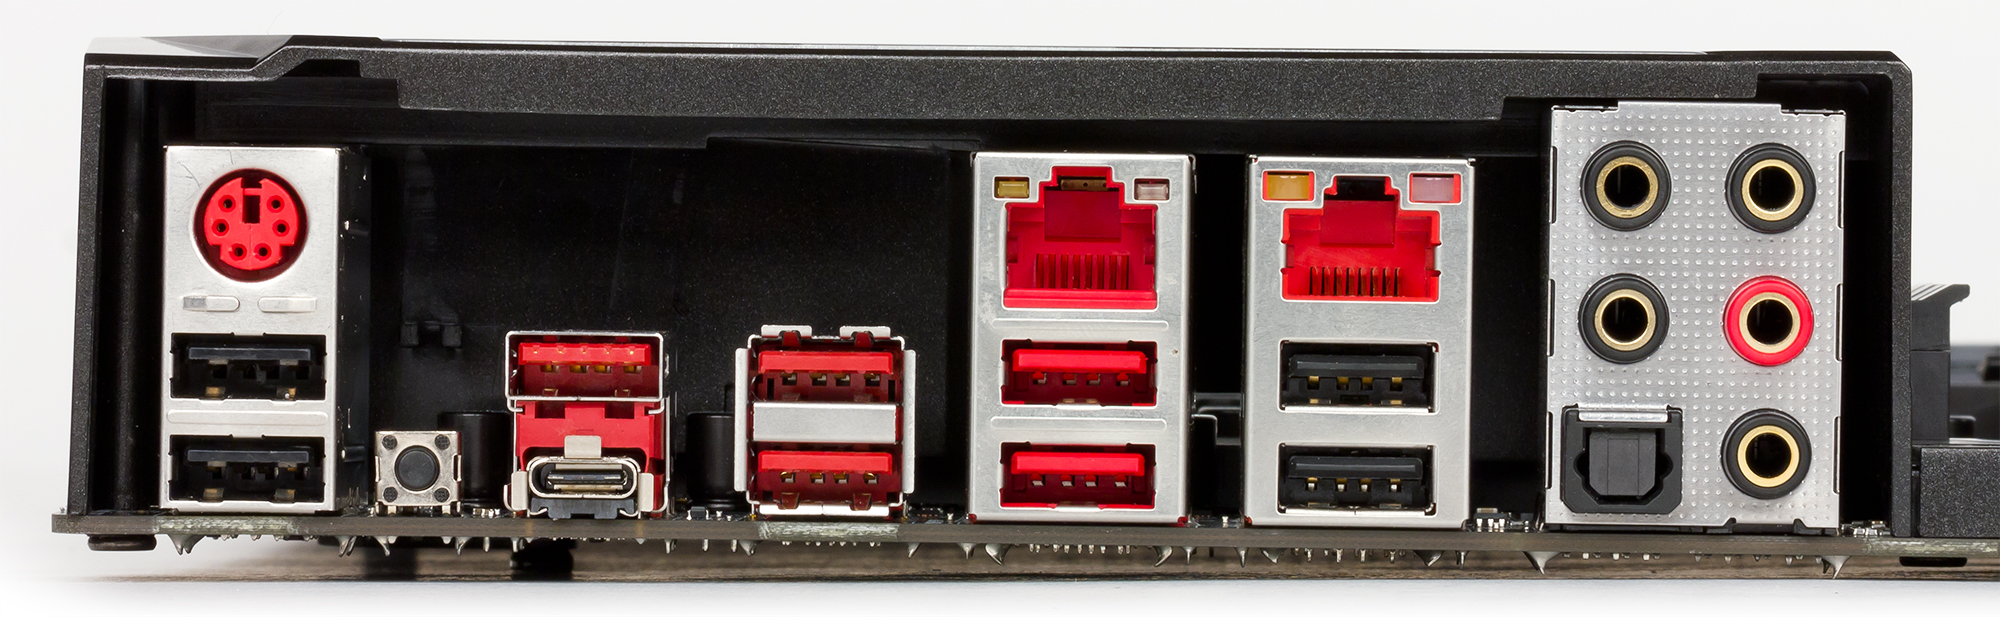 Жёлтый USB разъём на задней панели материнской платы. Интерфейсы задней панели современного ПК. Материнская плата MSI x670. Шкаф с розетками EC-MSI-x5de495.